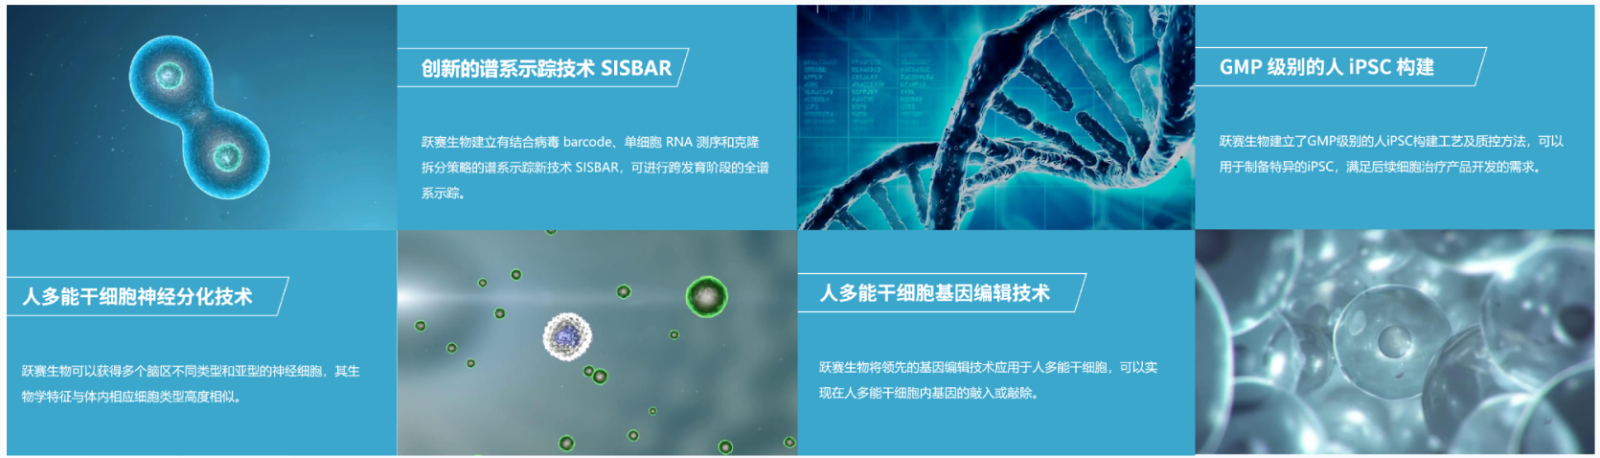 此外，跃赛生物还拥有人多能干细胞自主研发的创新技术平台，包括重编程技术，干细胞分化平台、SISBAR谱系示踪技术，干细胞基因编辑技术。